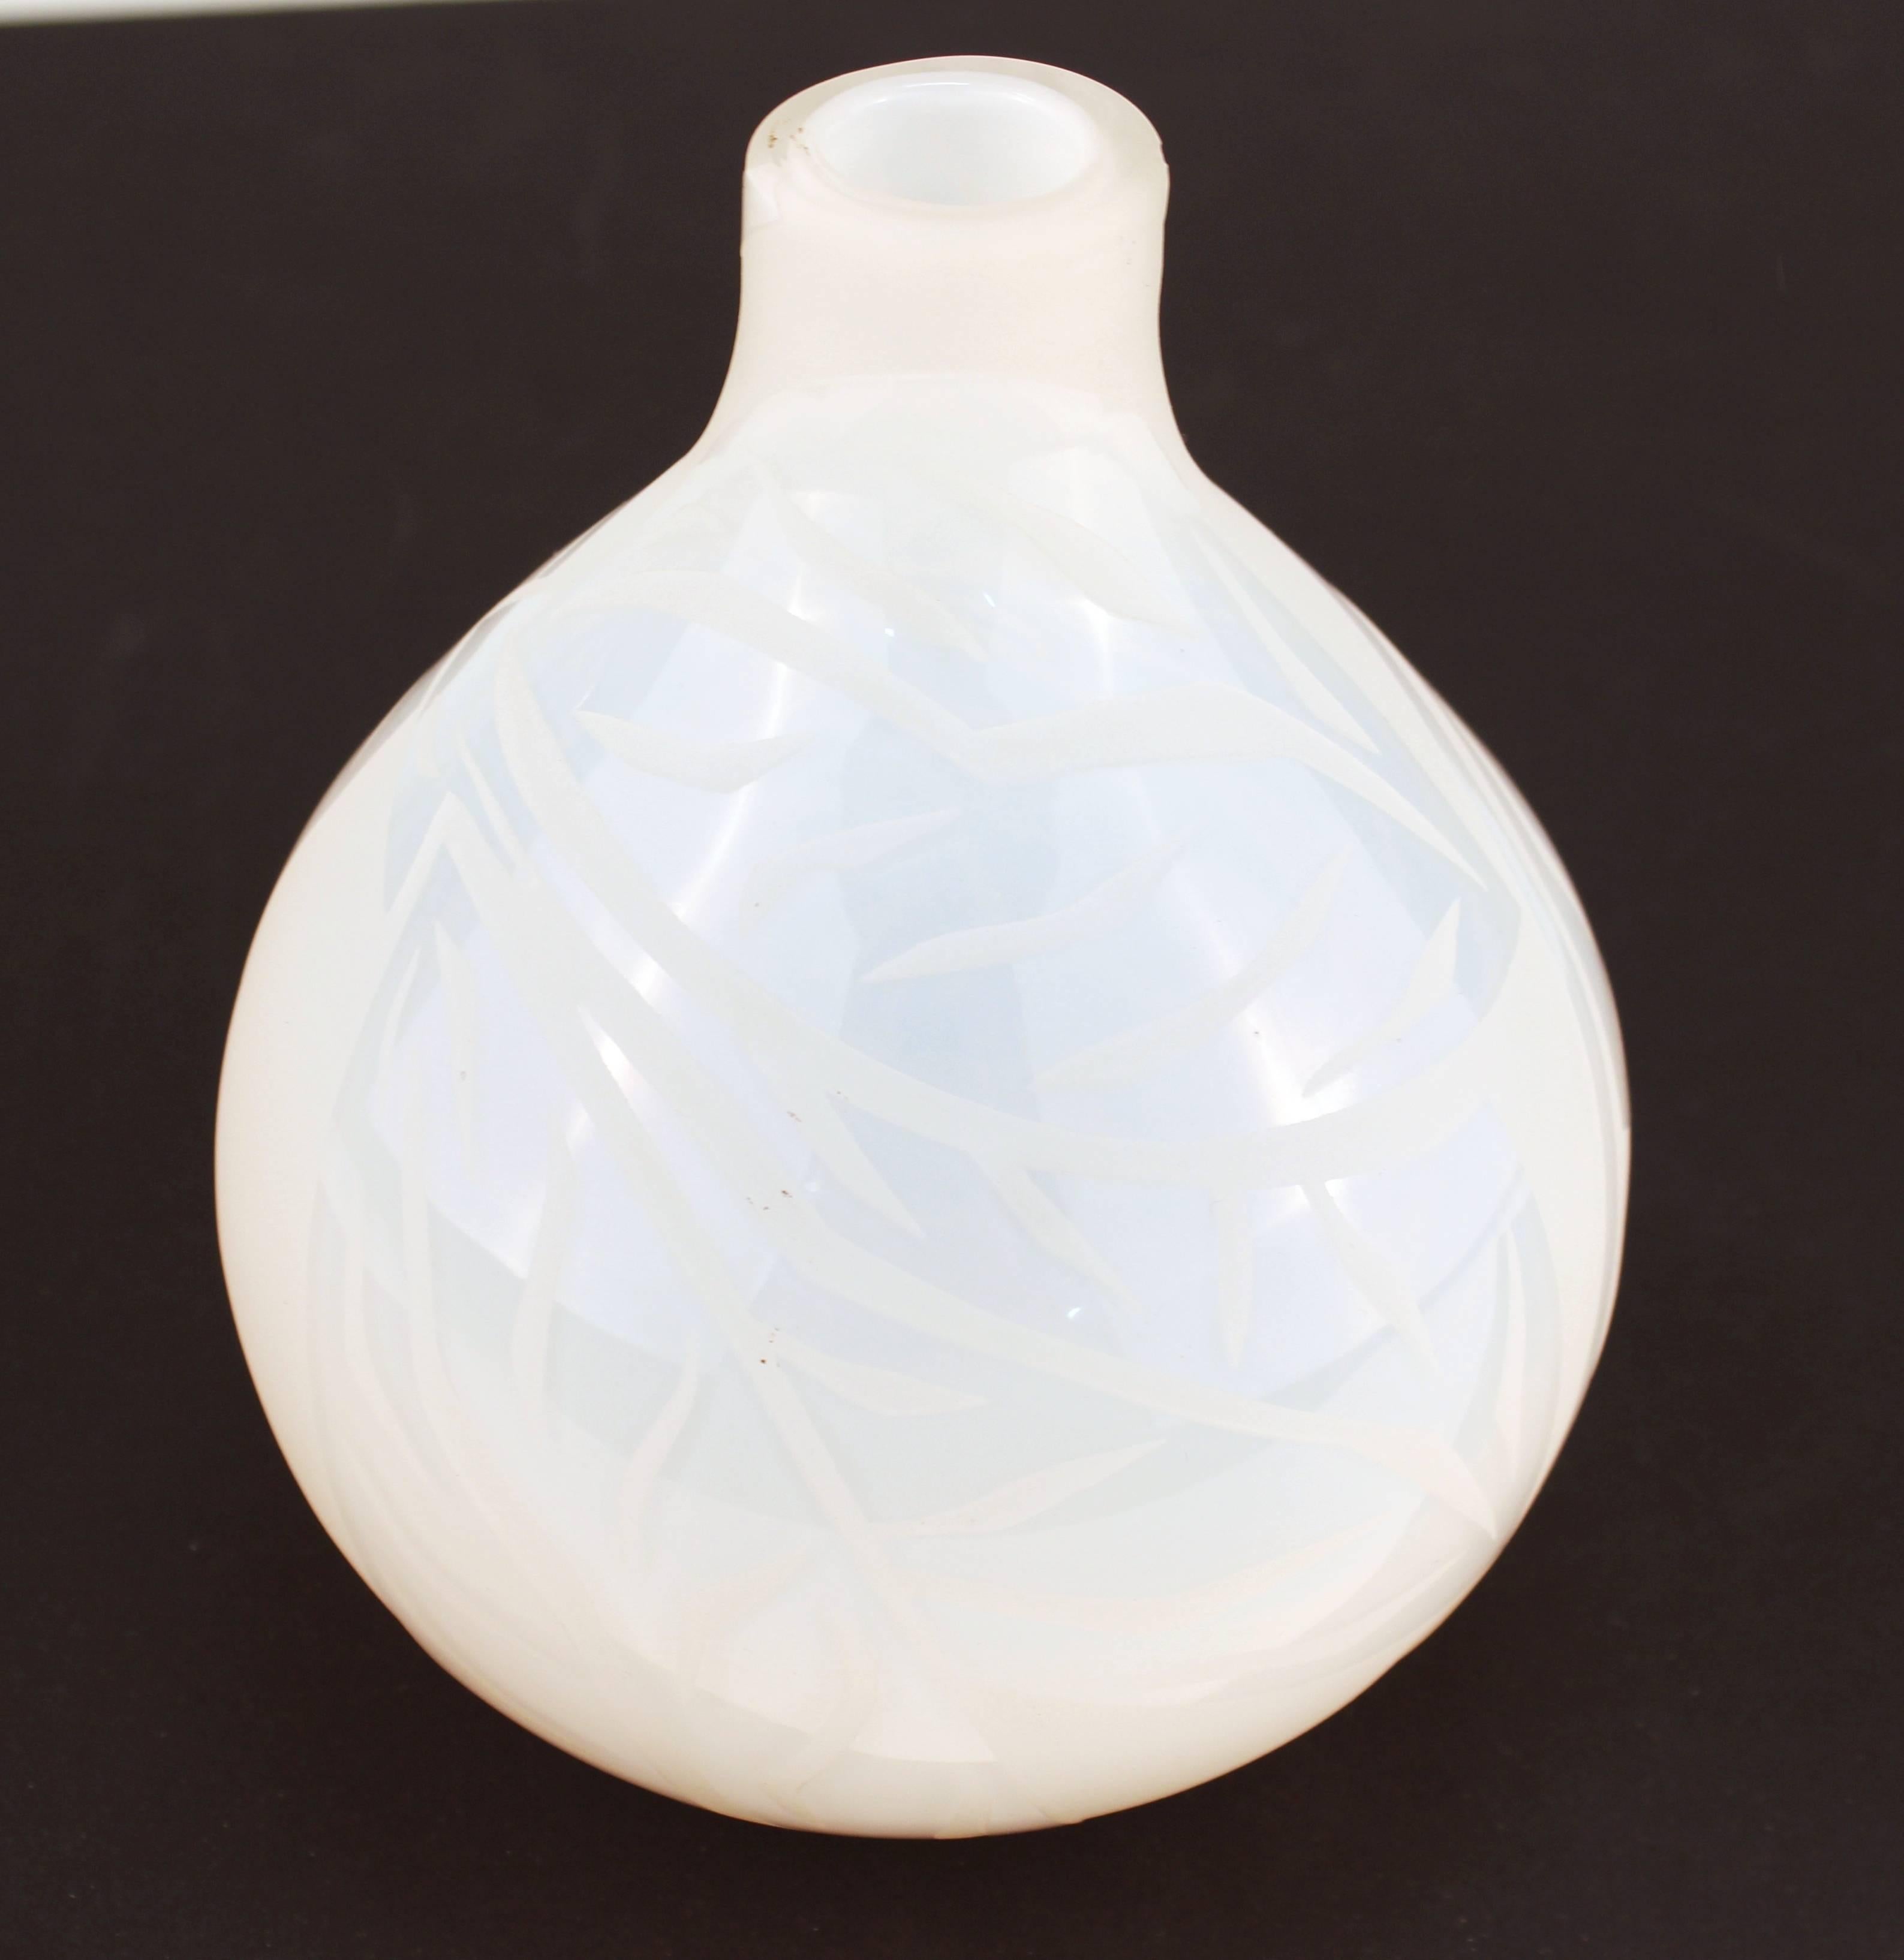 Vase en verre blanc du milieu du 20e siècle. Produit avec une base en forme de bulbe, un col minuscule et une bouche étroite. La pièce présente un motif de feuille autour du corps du vase. Portez des vêtements adaptés à l'âge et à l'utilisation. Le